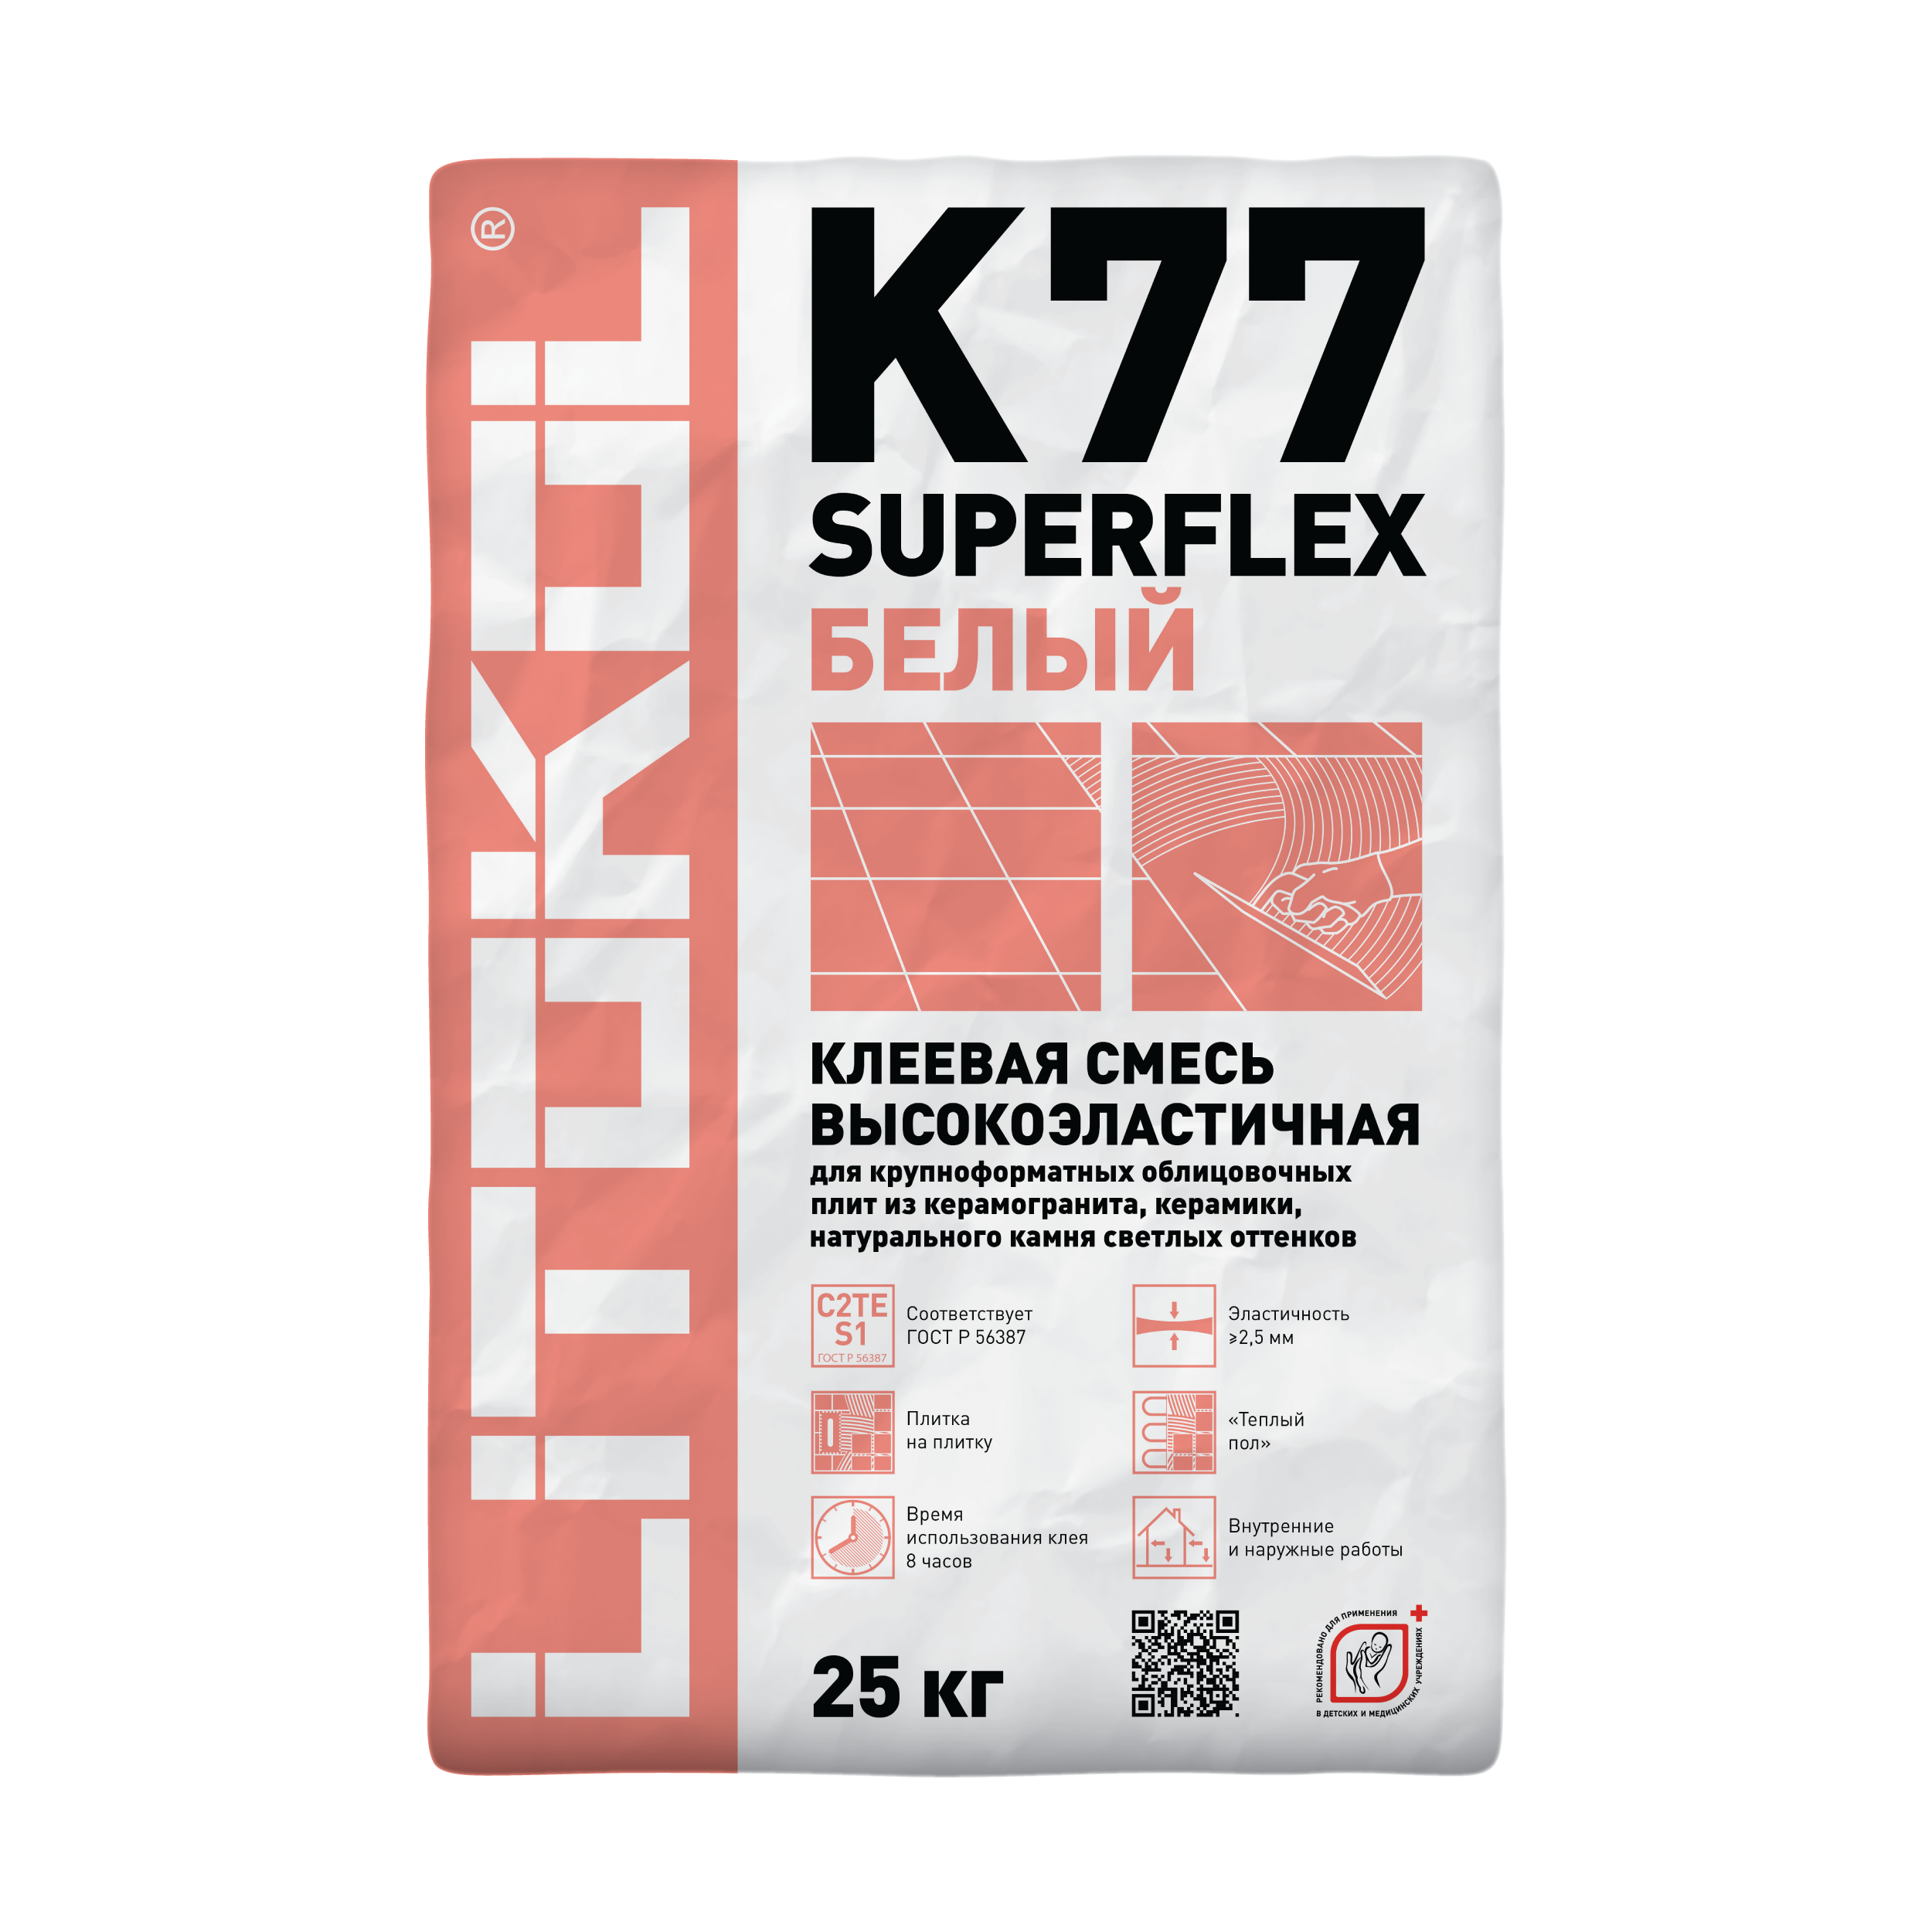 Клей для плитки Litokol Superflex k77. Litokol k77 Superflex белый 25 кг. Superflex k77 клеевая смесь 25 кг Litokol. Плиточный клей Литокол к 77. Эластичный клей для плитки